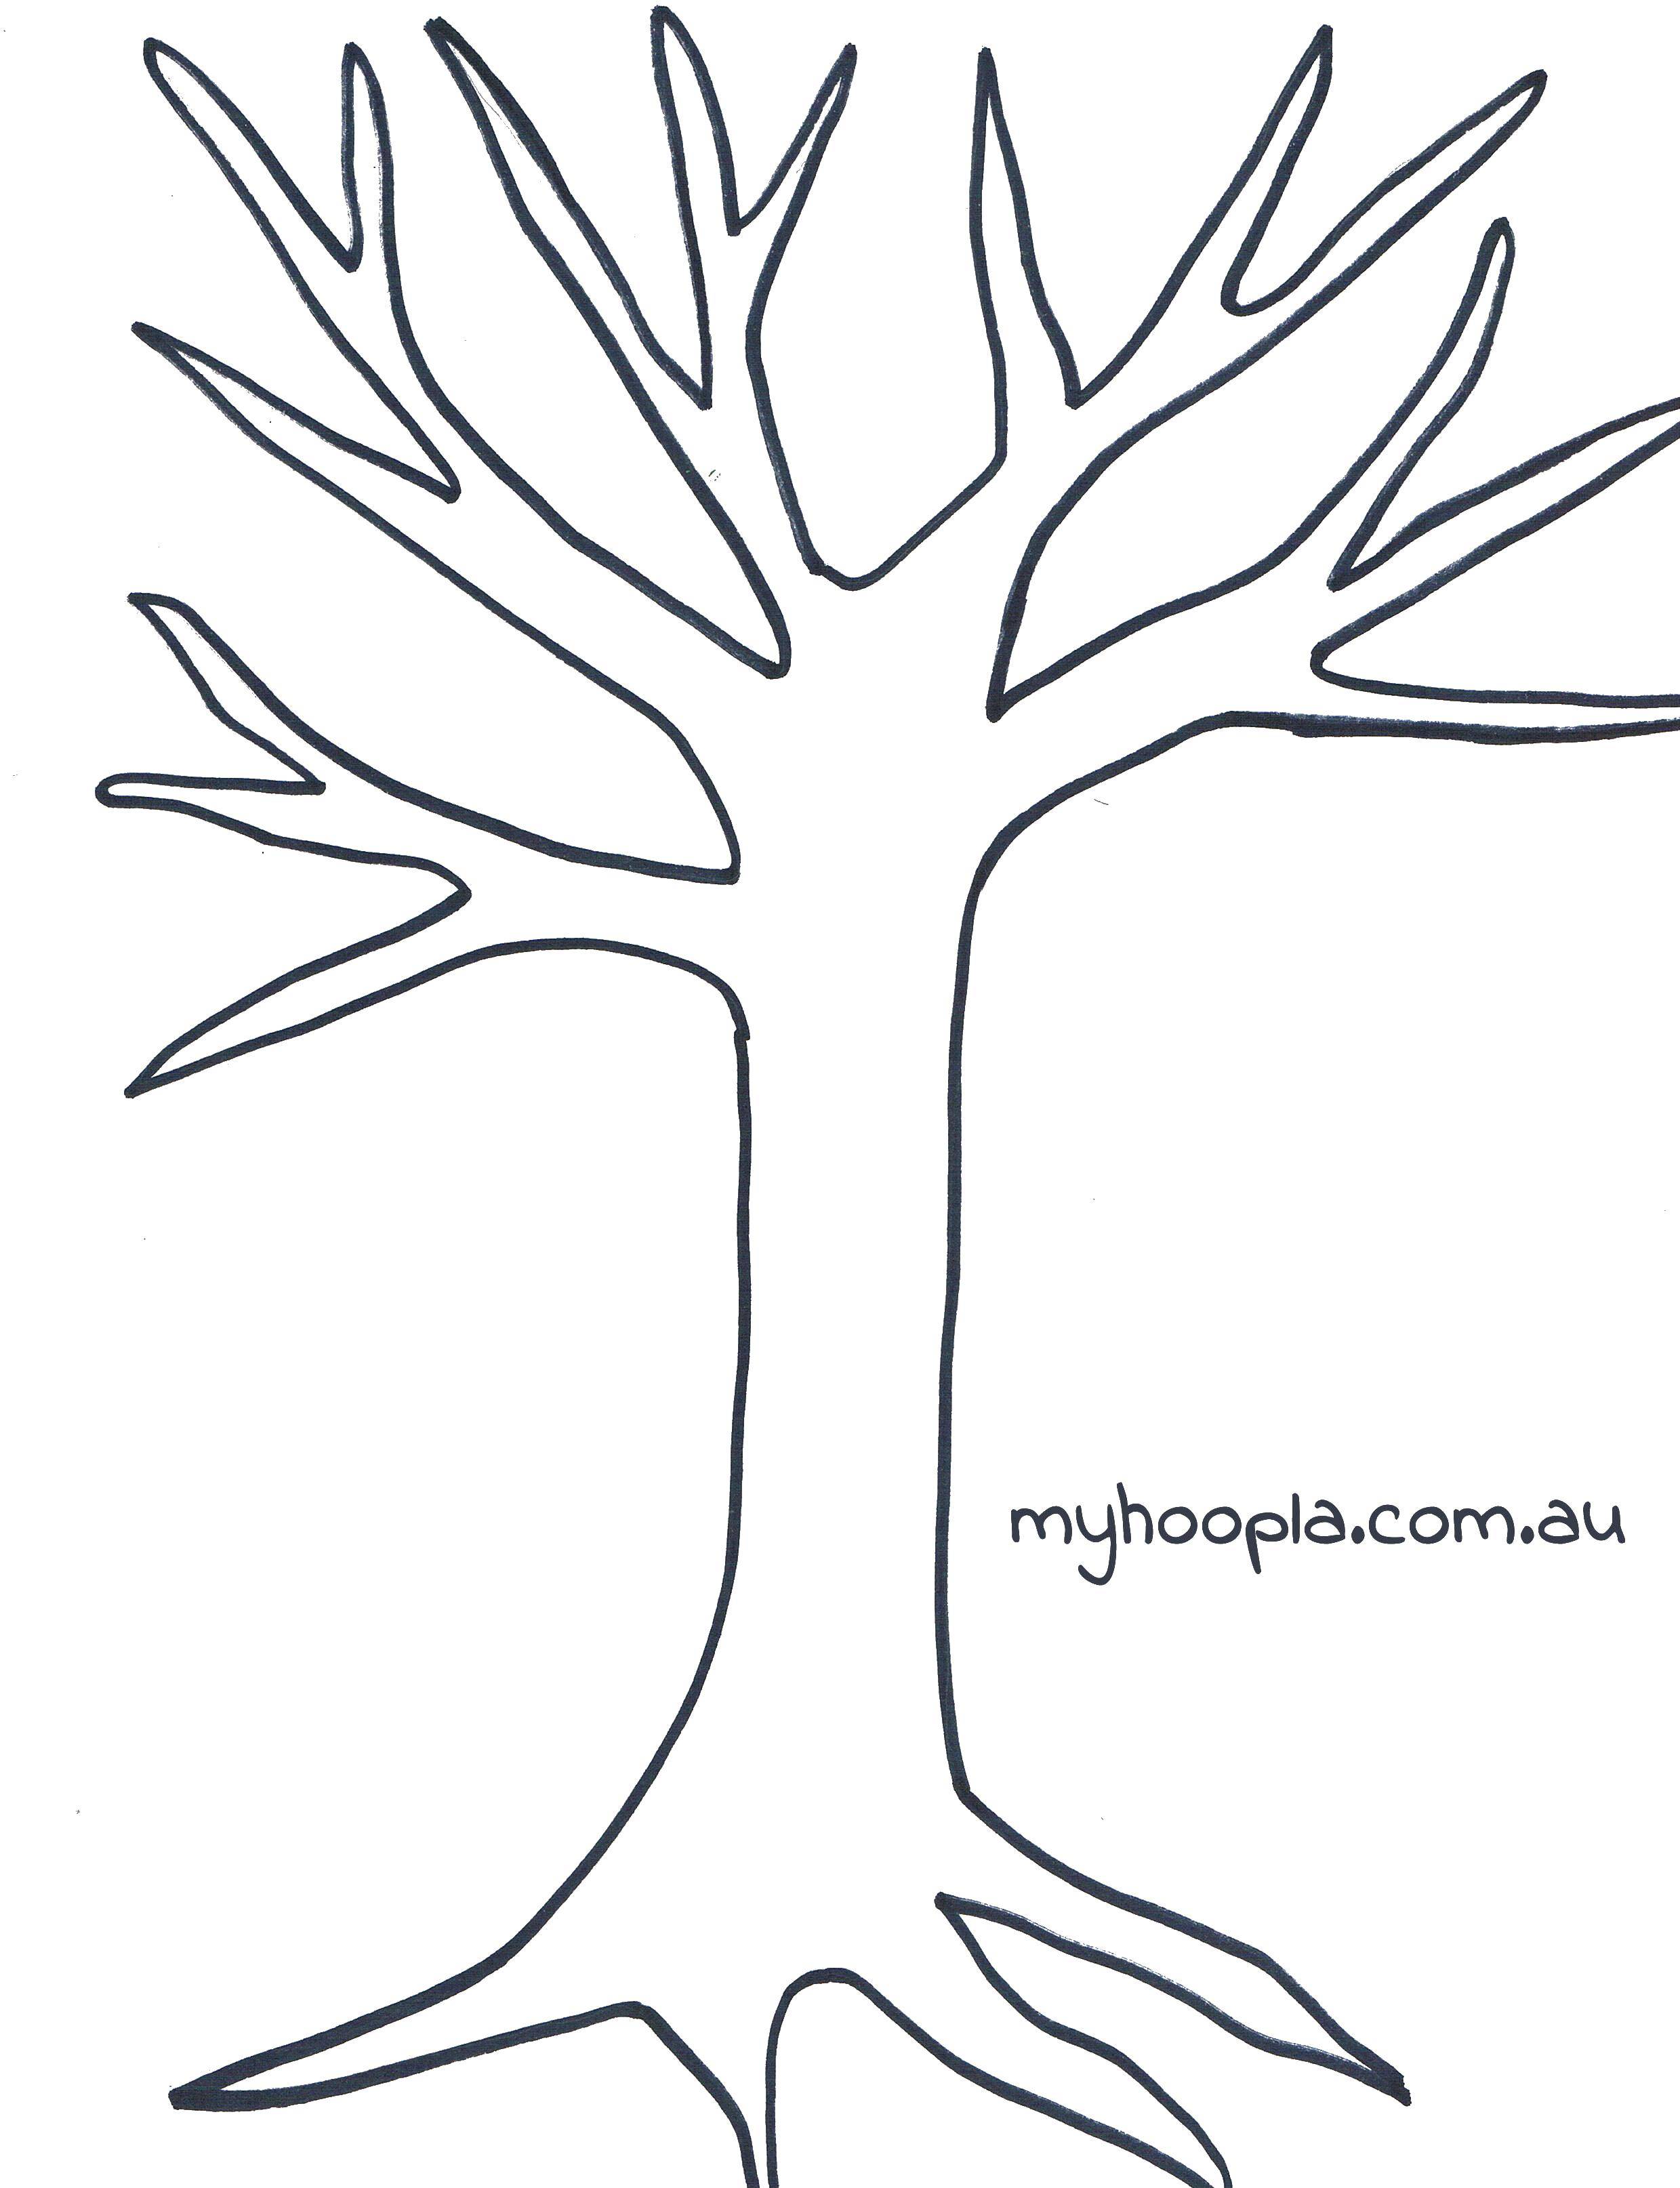 Название: Раскраска Контур дерева. Категория: Семейное дерево. Теги: контур дерева.